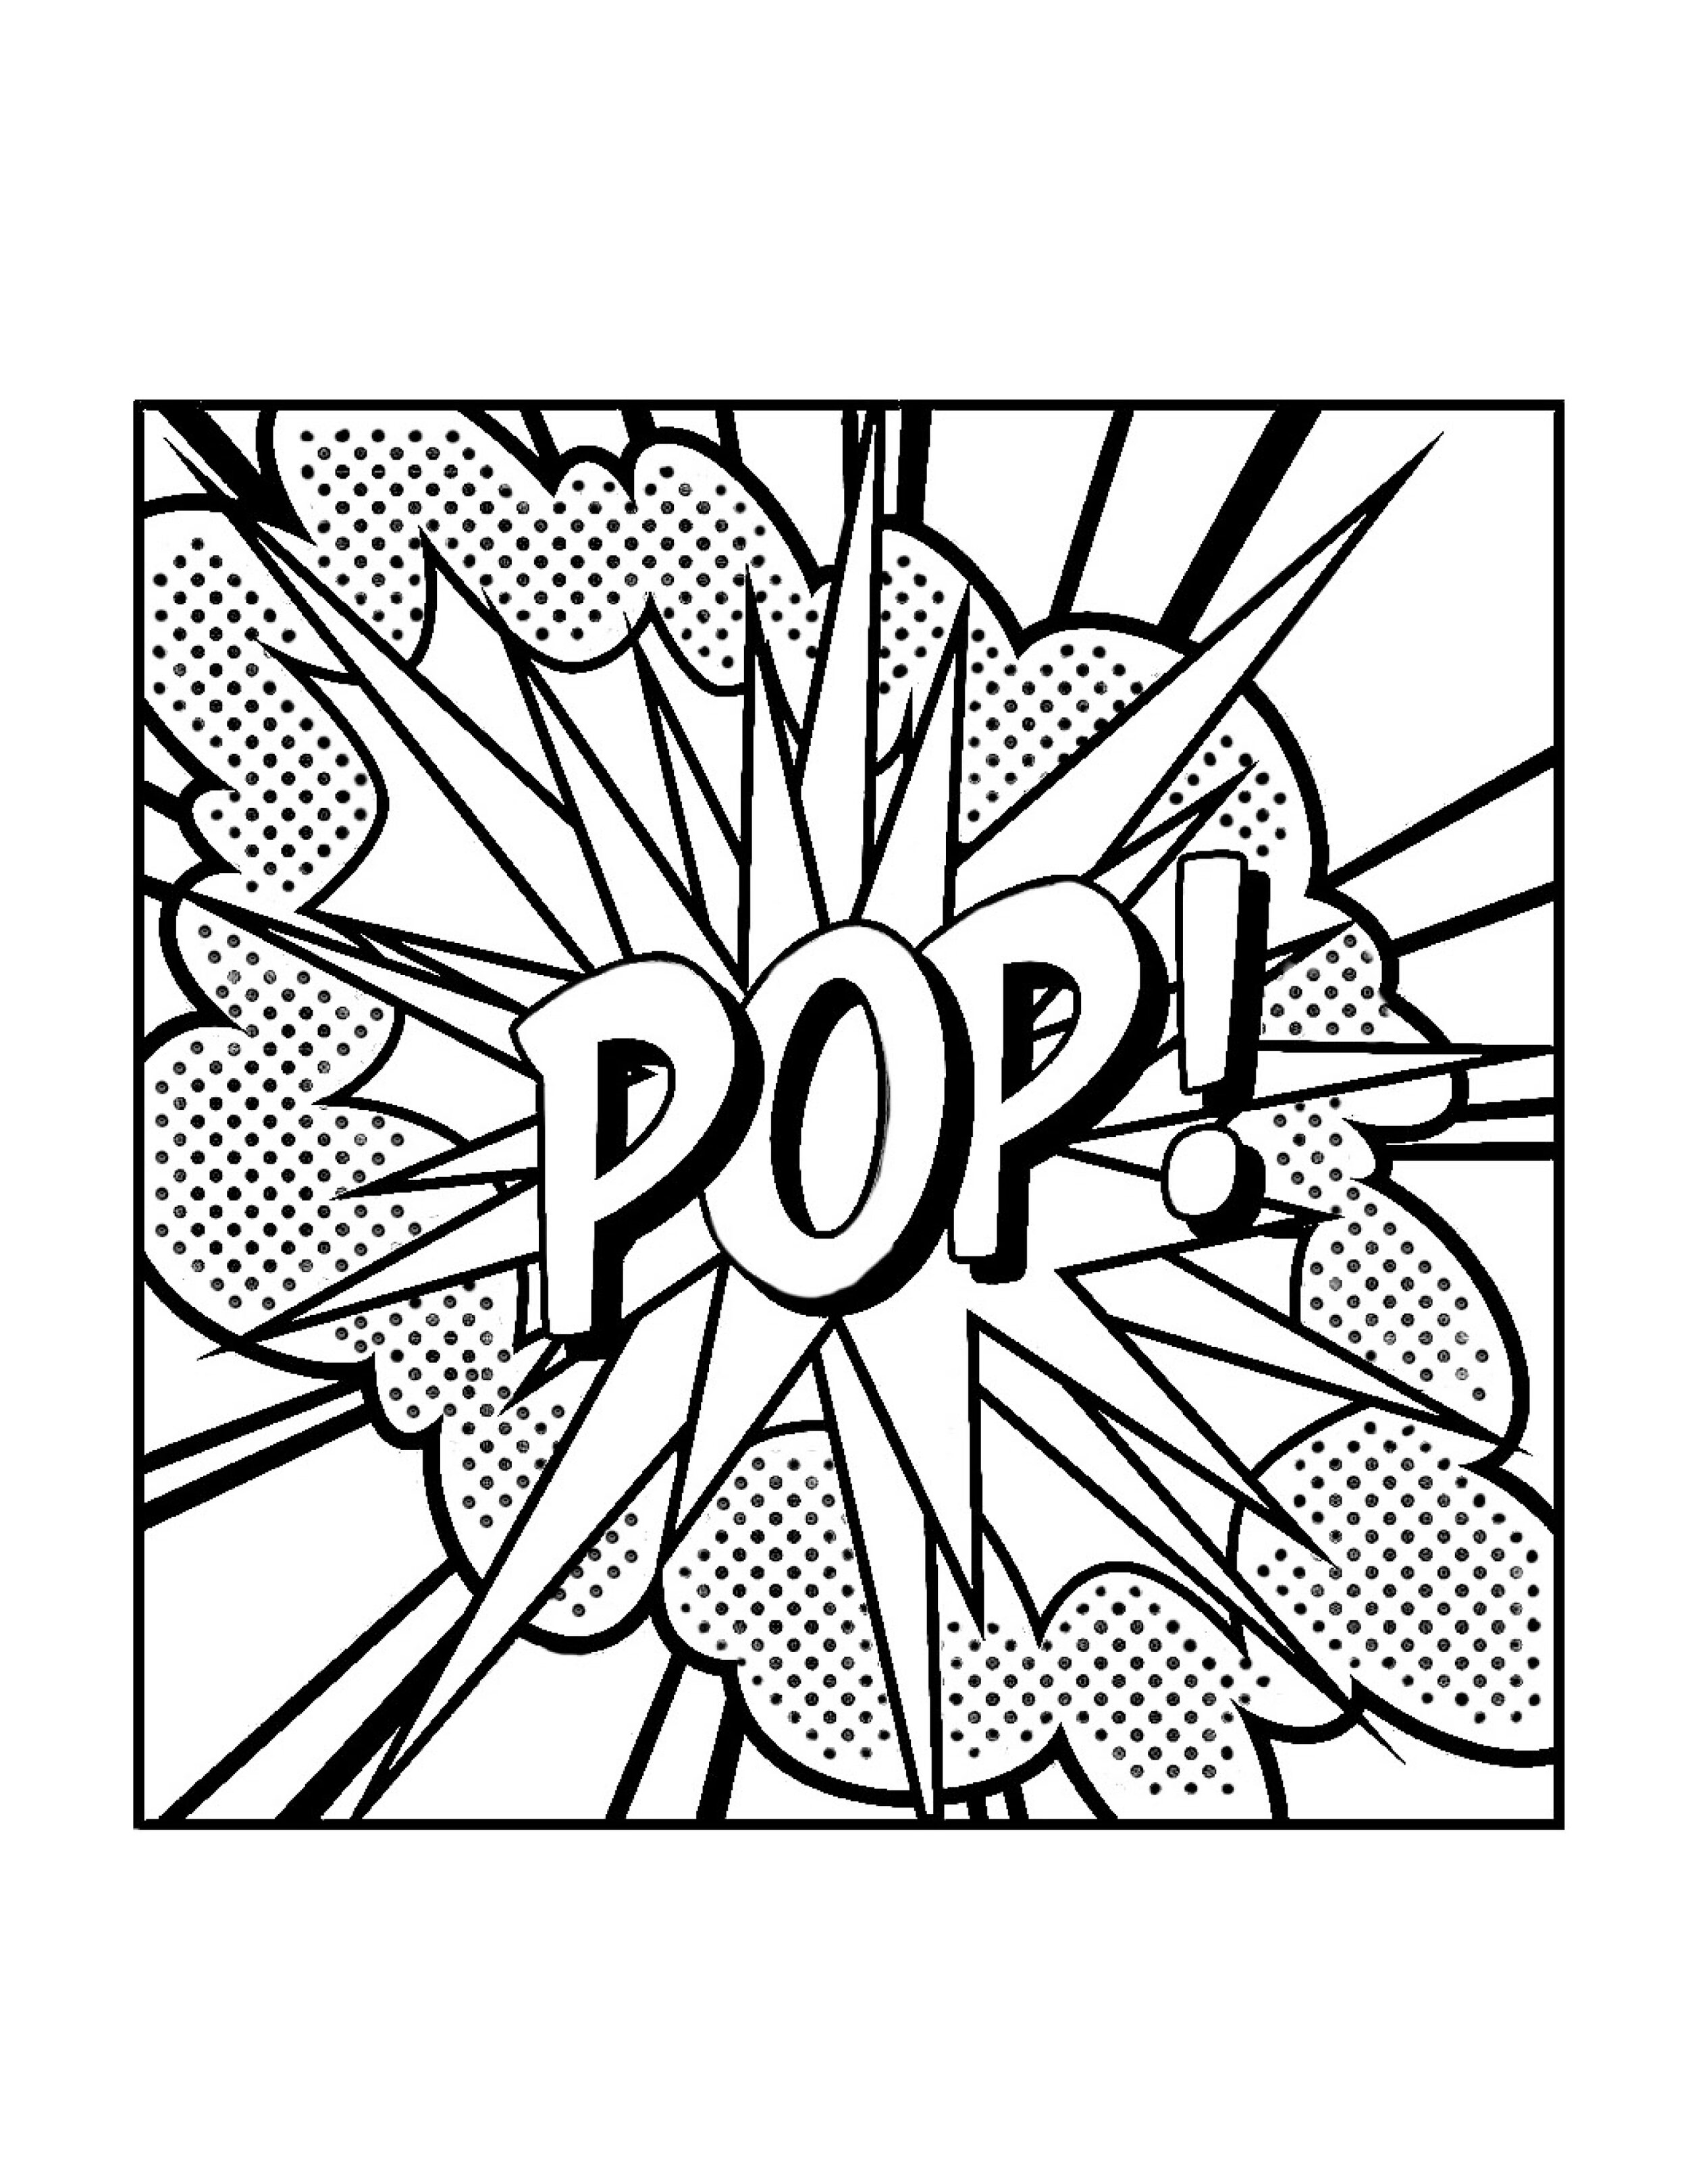 Pop by Roy Lichtenstein